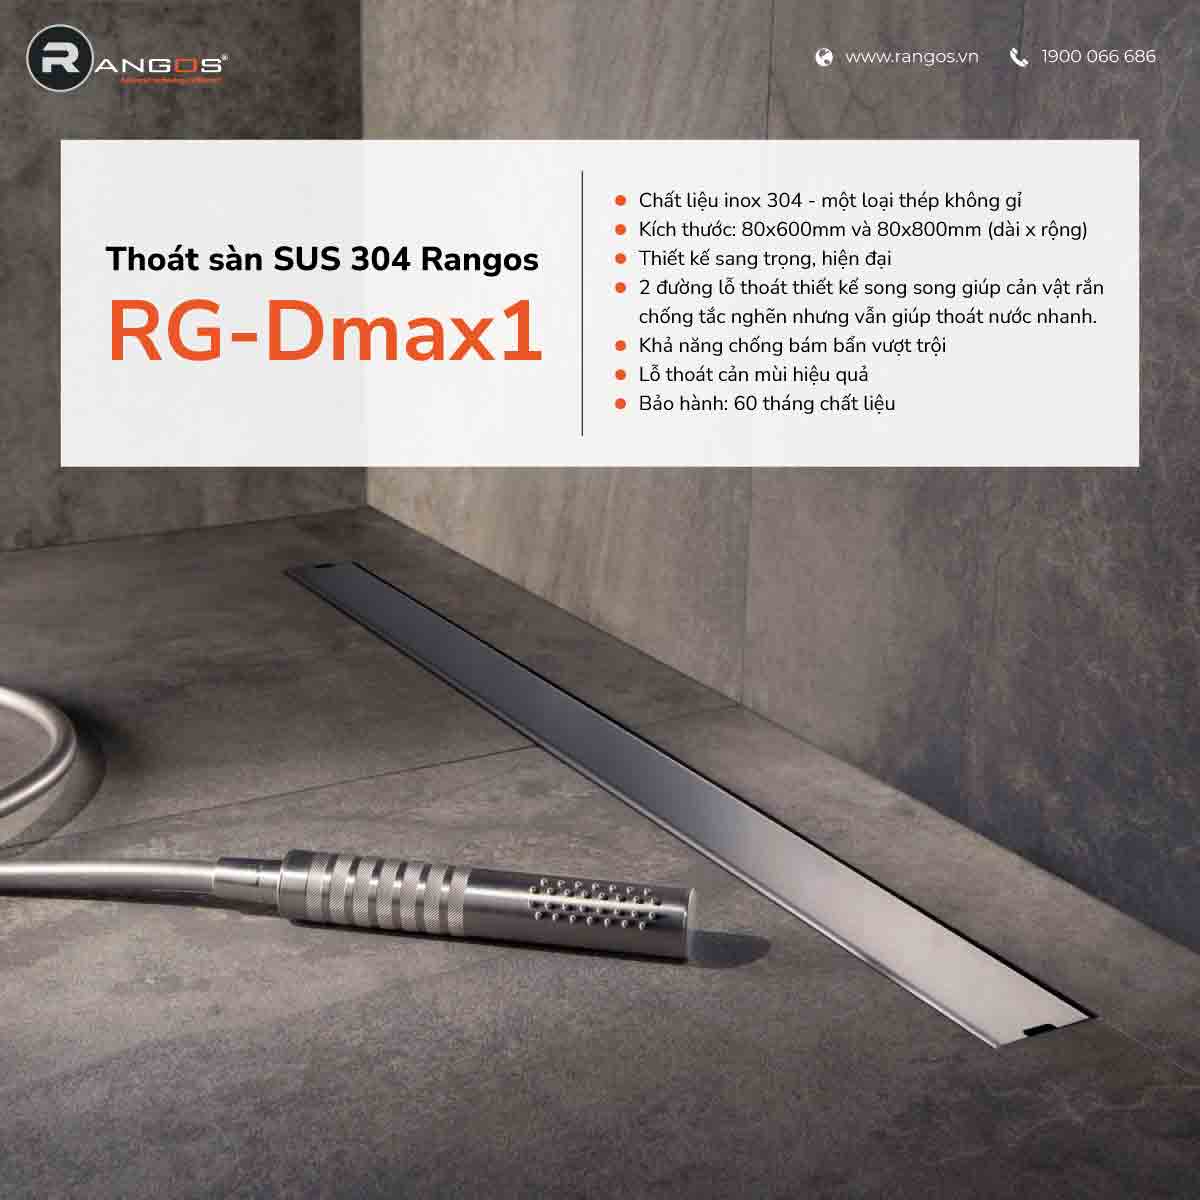 Thoát sàn nhà tắm cao cấp SUS 304 RG-Dmax1